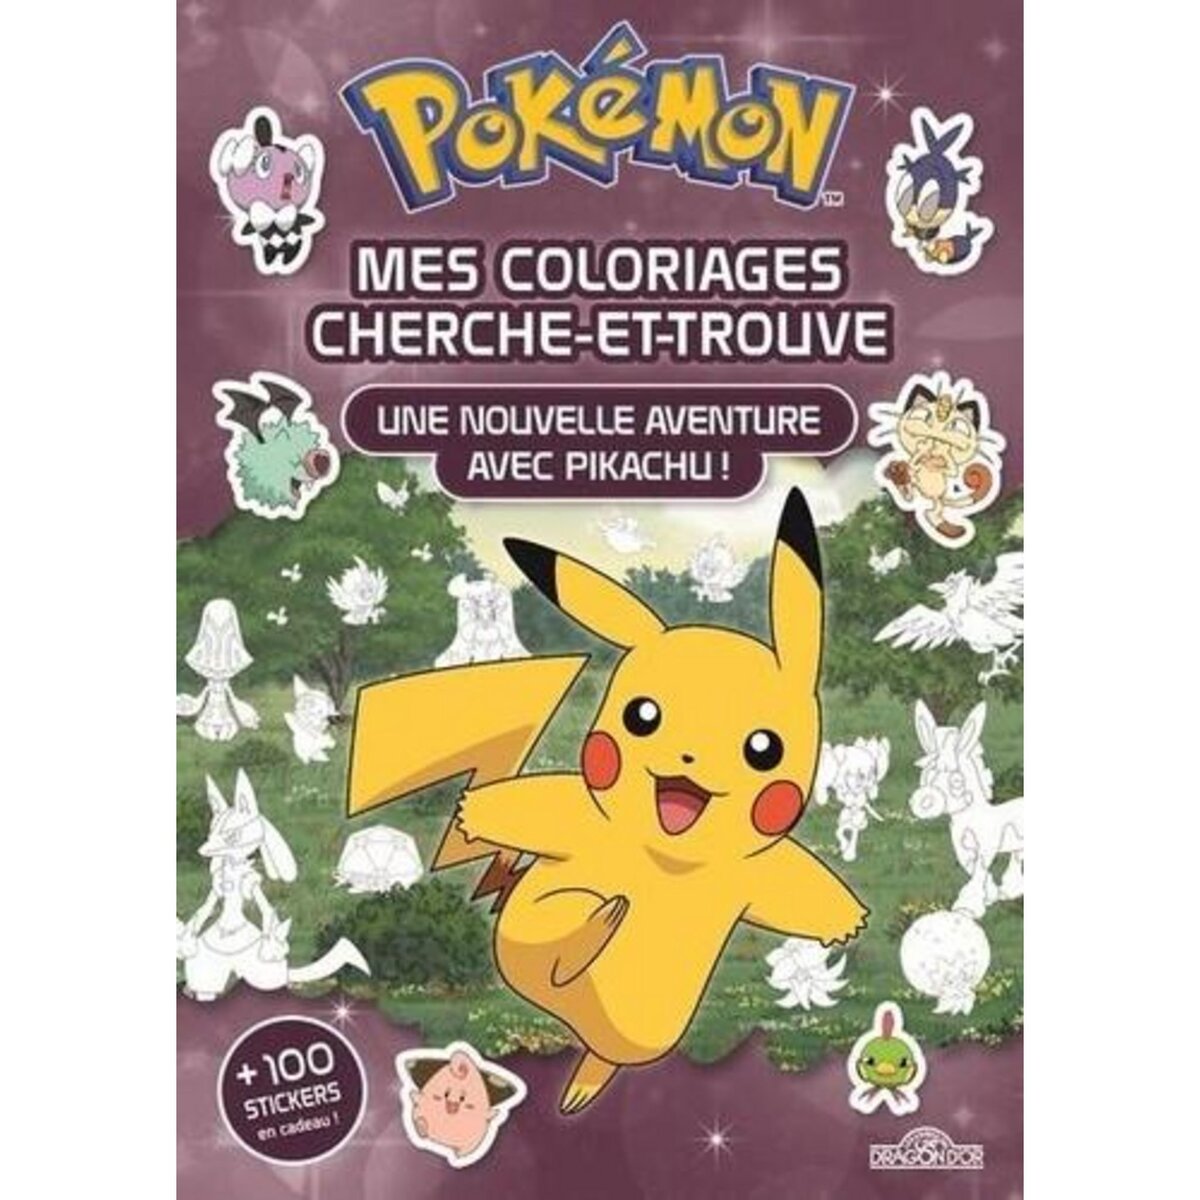 Les Pokémon - Pokémon - Coloriages Pixels - The Pokémon Company